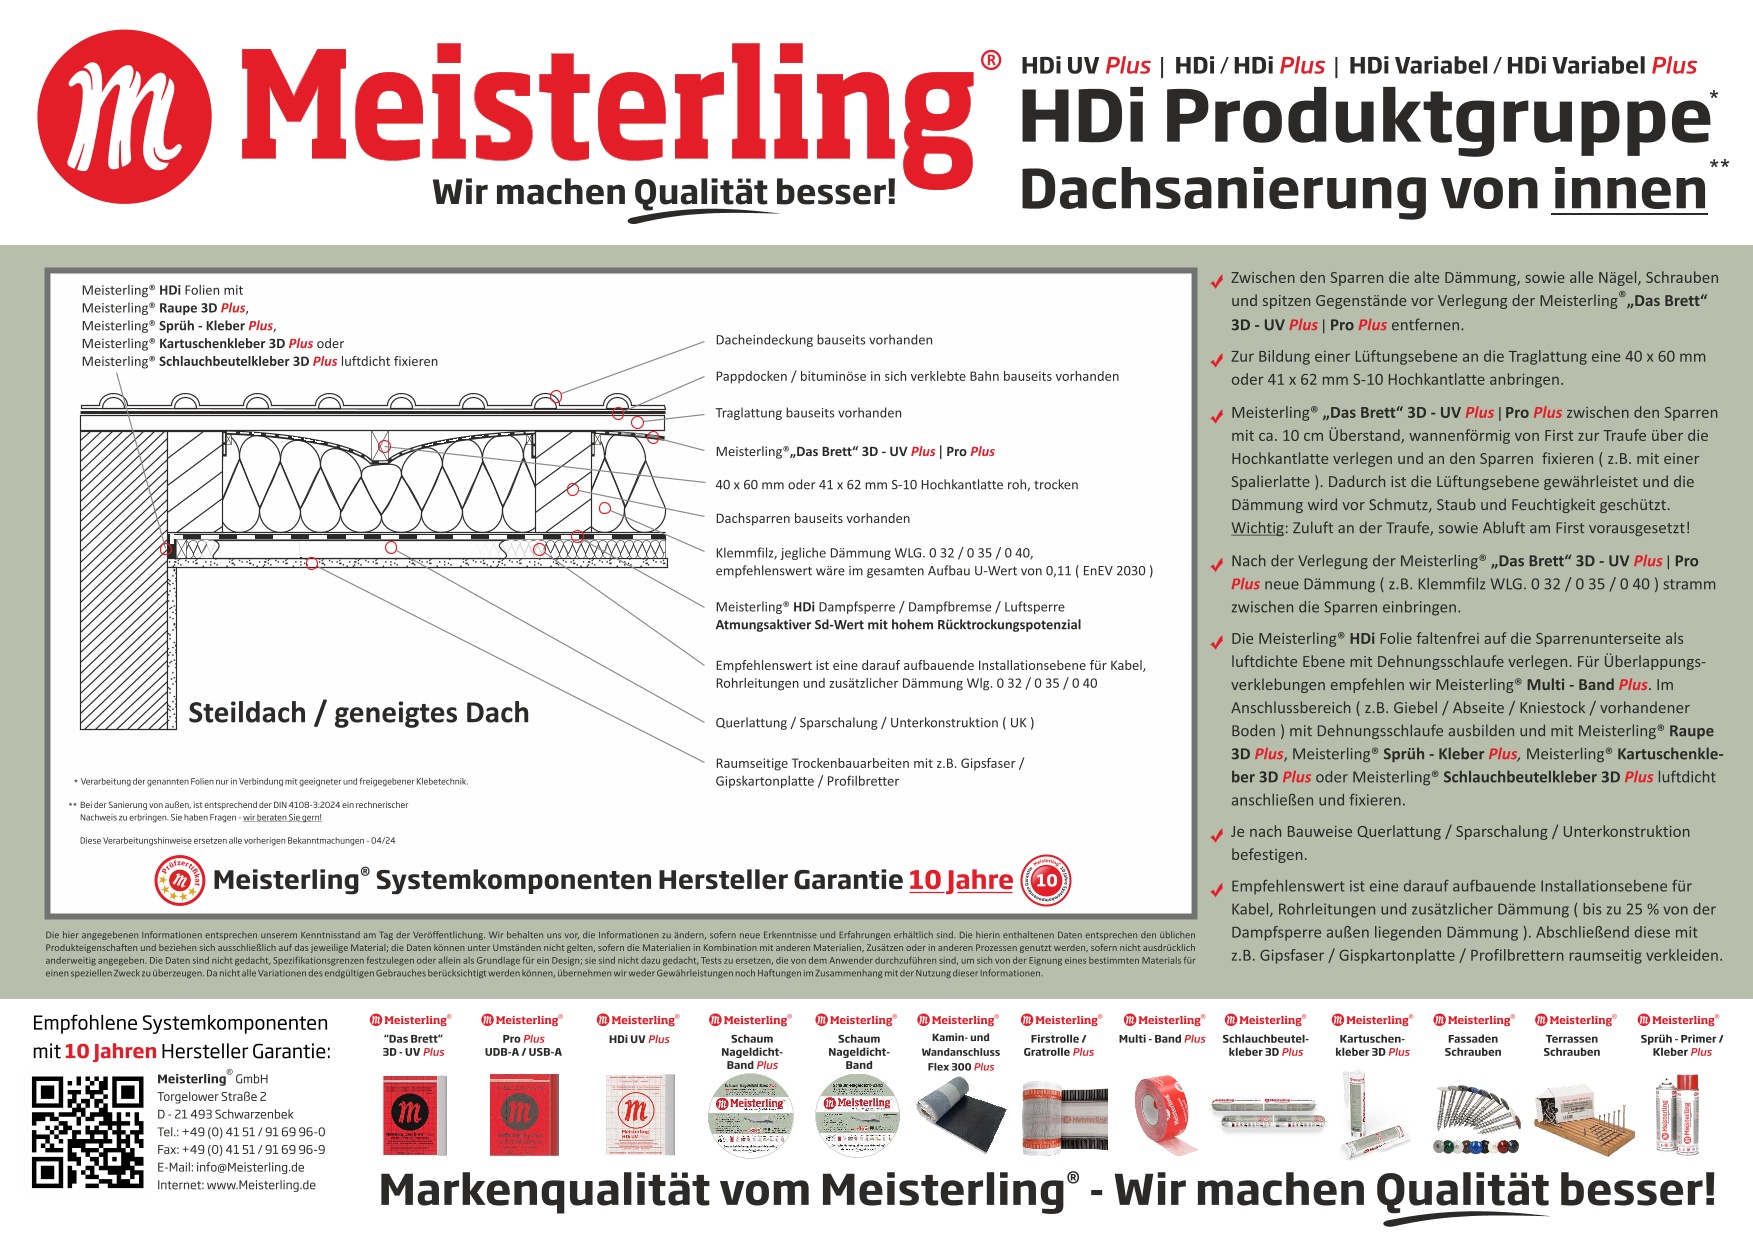 Meisterling HDi + HDi Variabel und Pro - Sanierung von Innen